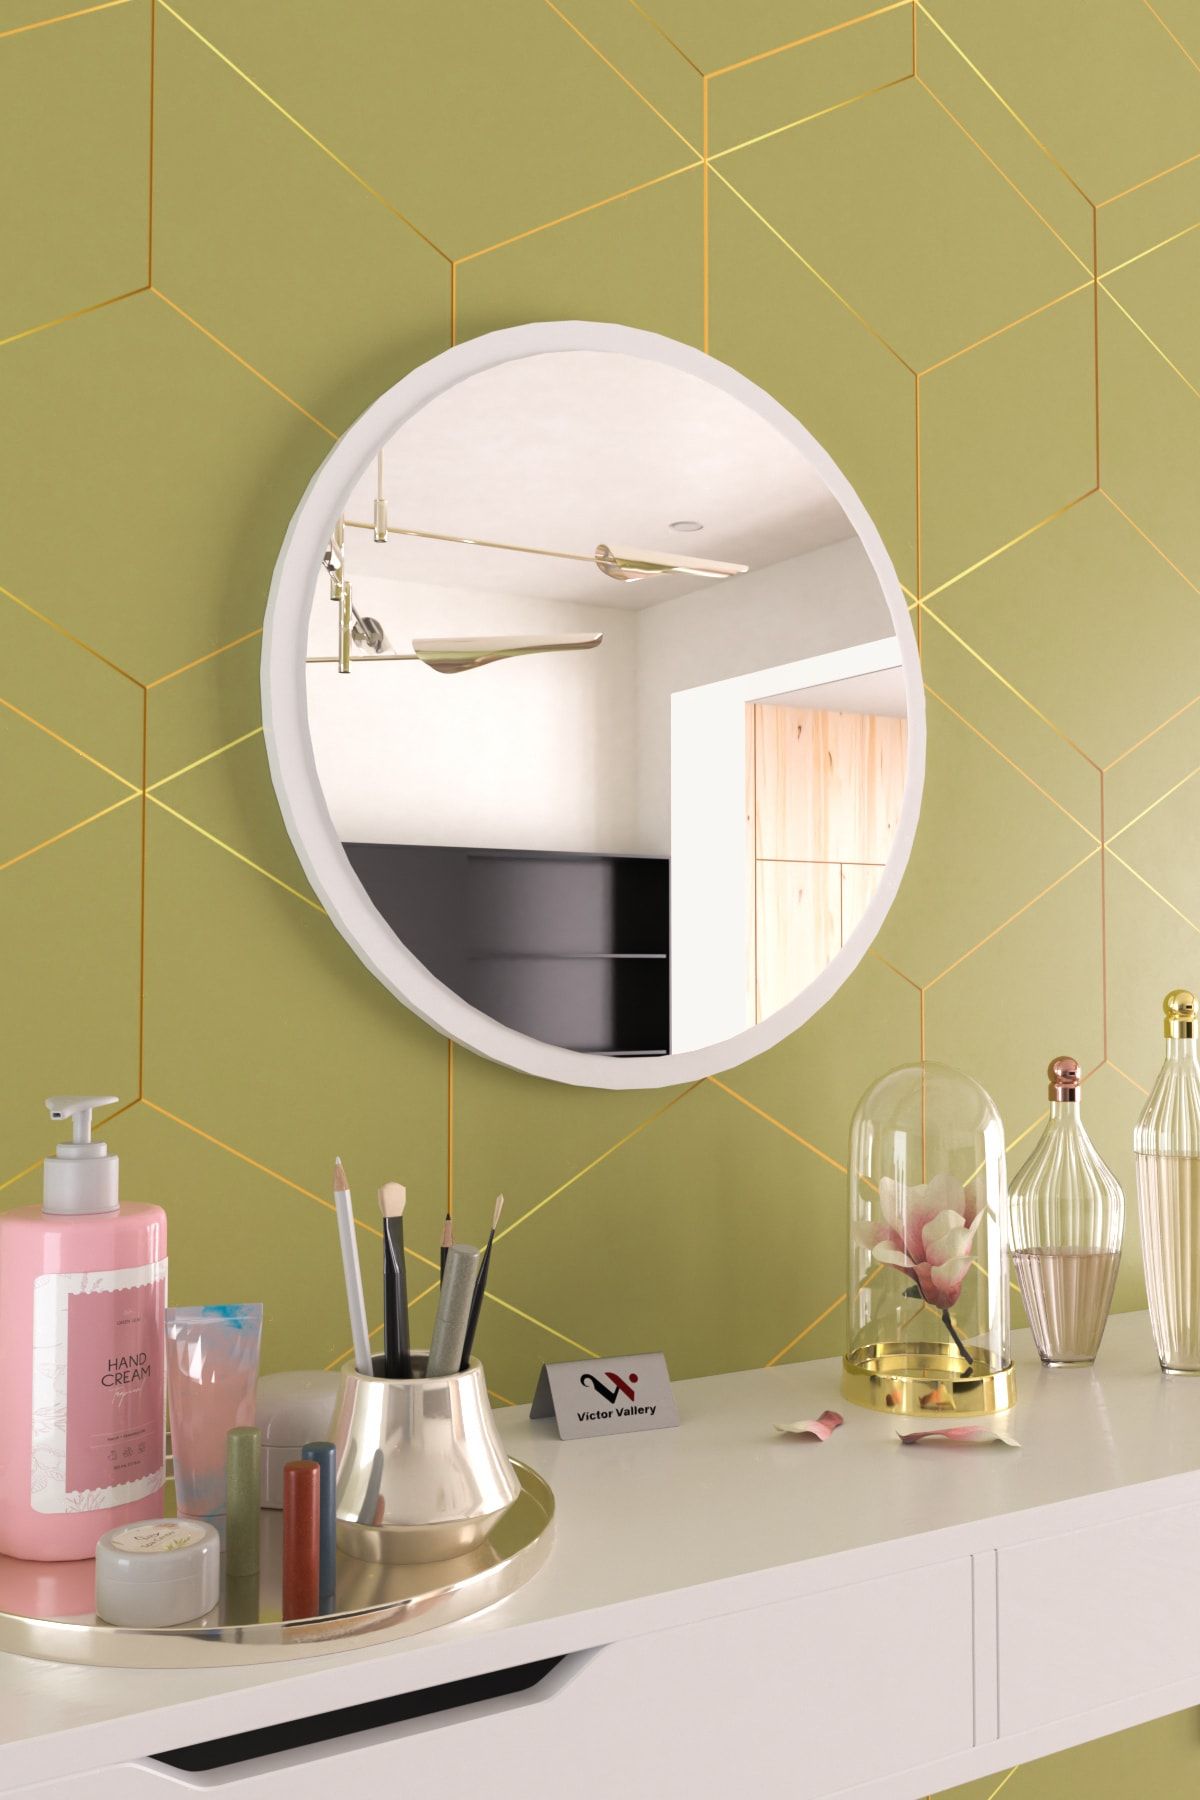 Hediyeler Kapında Beyaz Dekoratif Yuvarlak Duvar Aynası Salon Antre Ofis Salon Wc Banyo Uyumlu 60 Cm